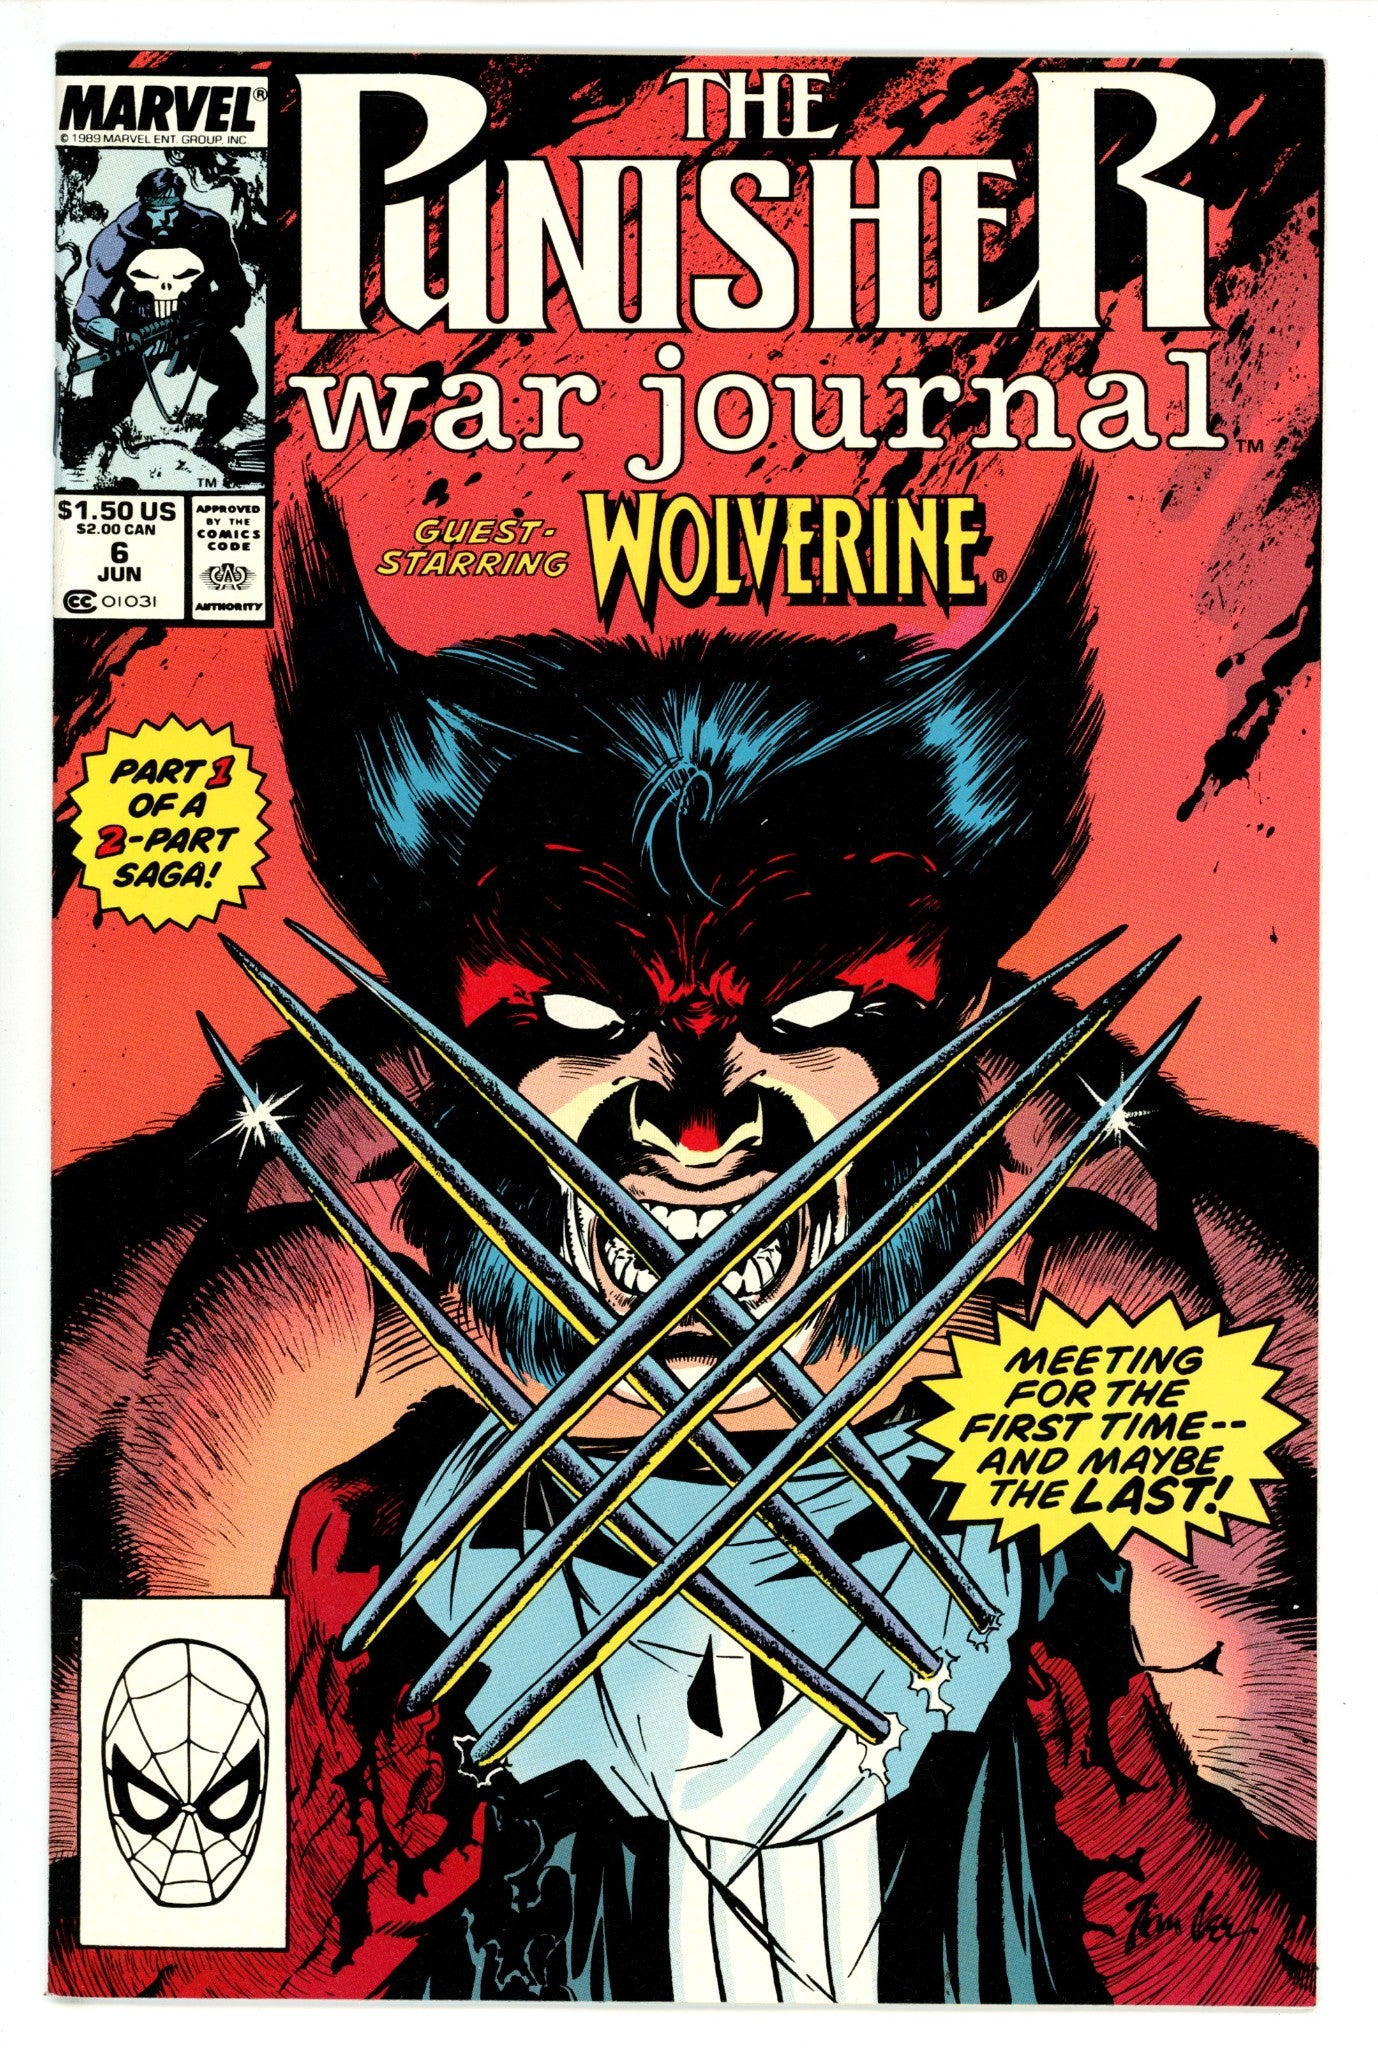 The Punisher War Journal Vol 1 6 VF (8.0) (1989) 